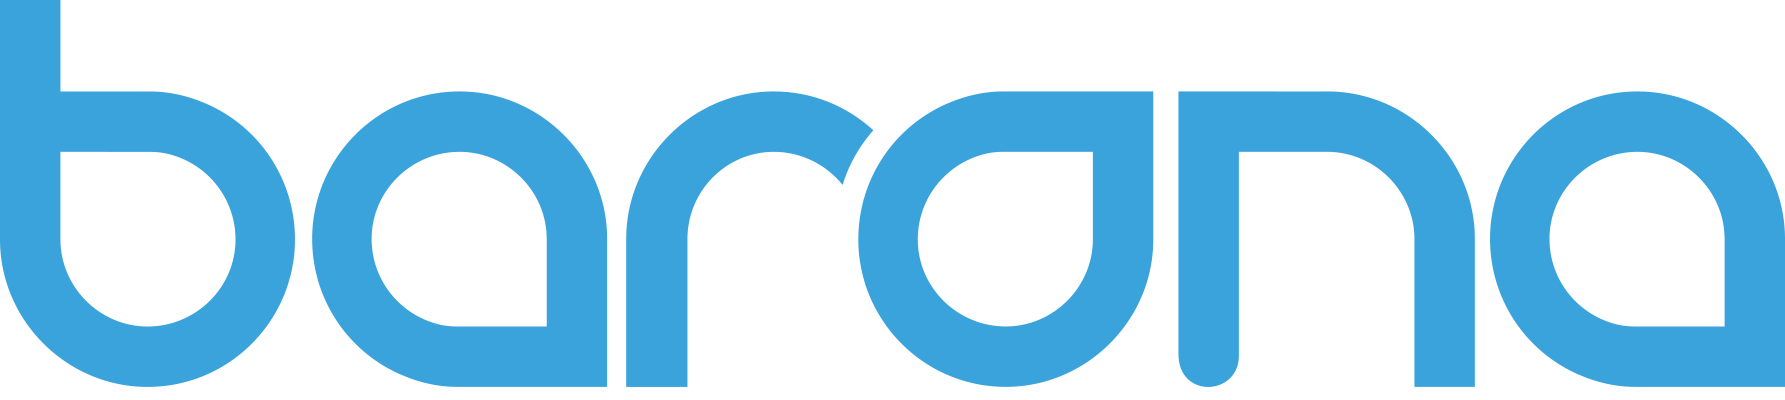 Barona_logo